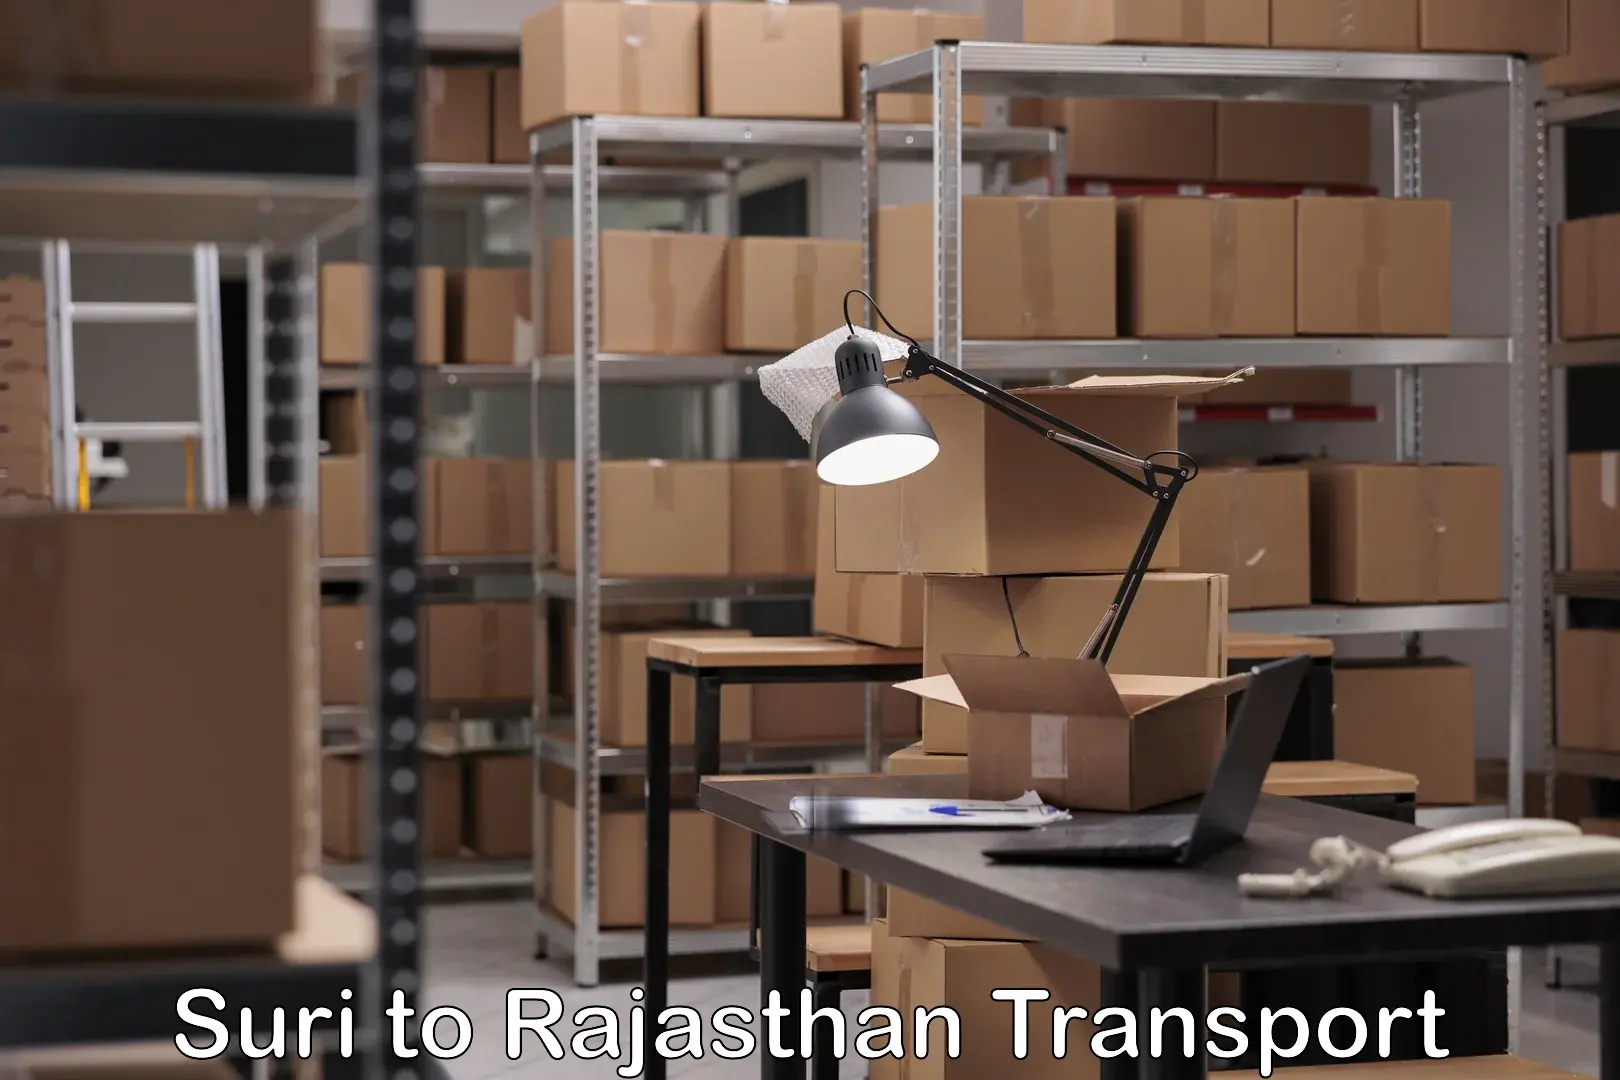 Furniture transport service Suri to Rajasthan